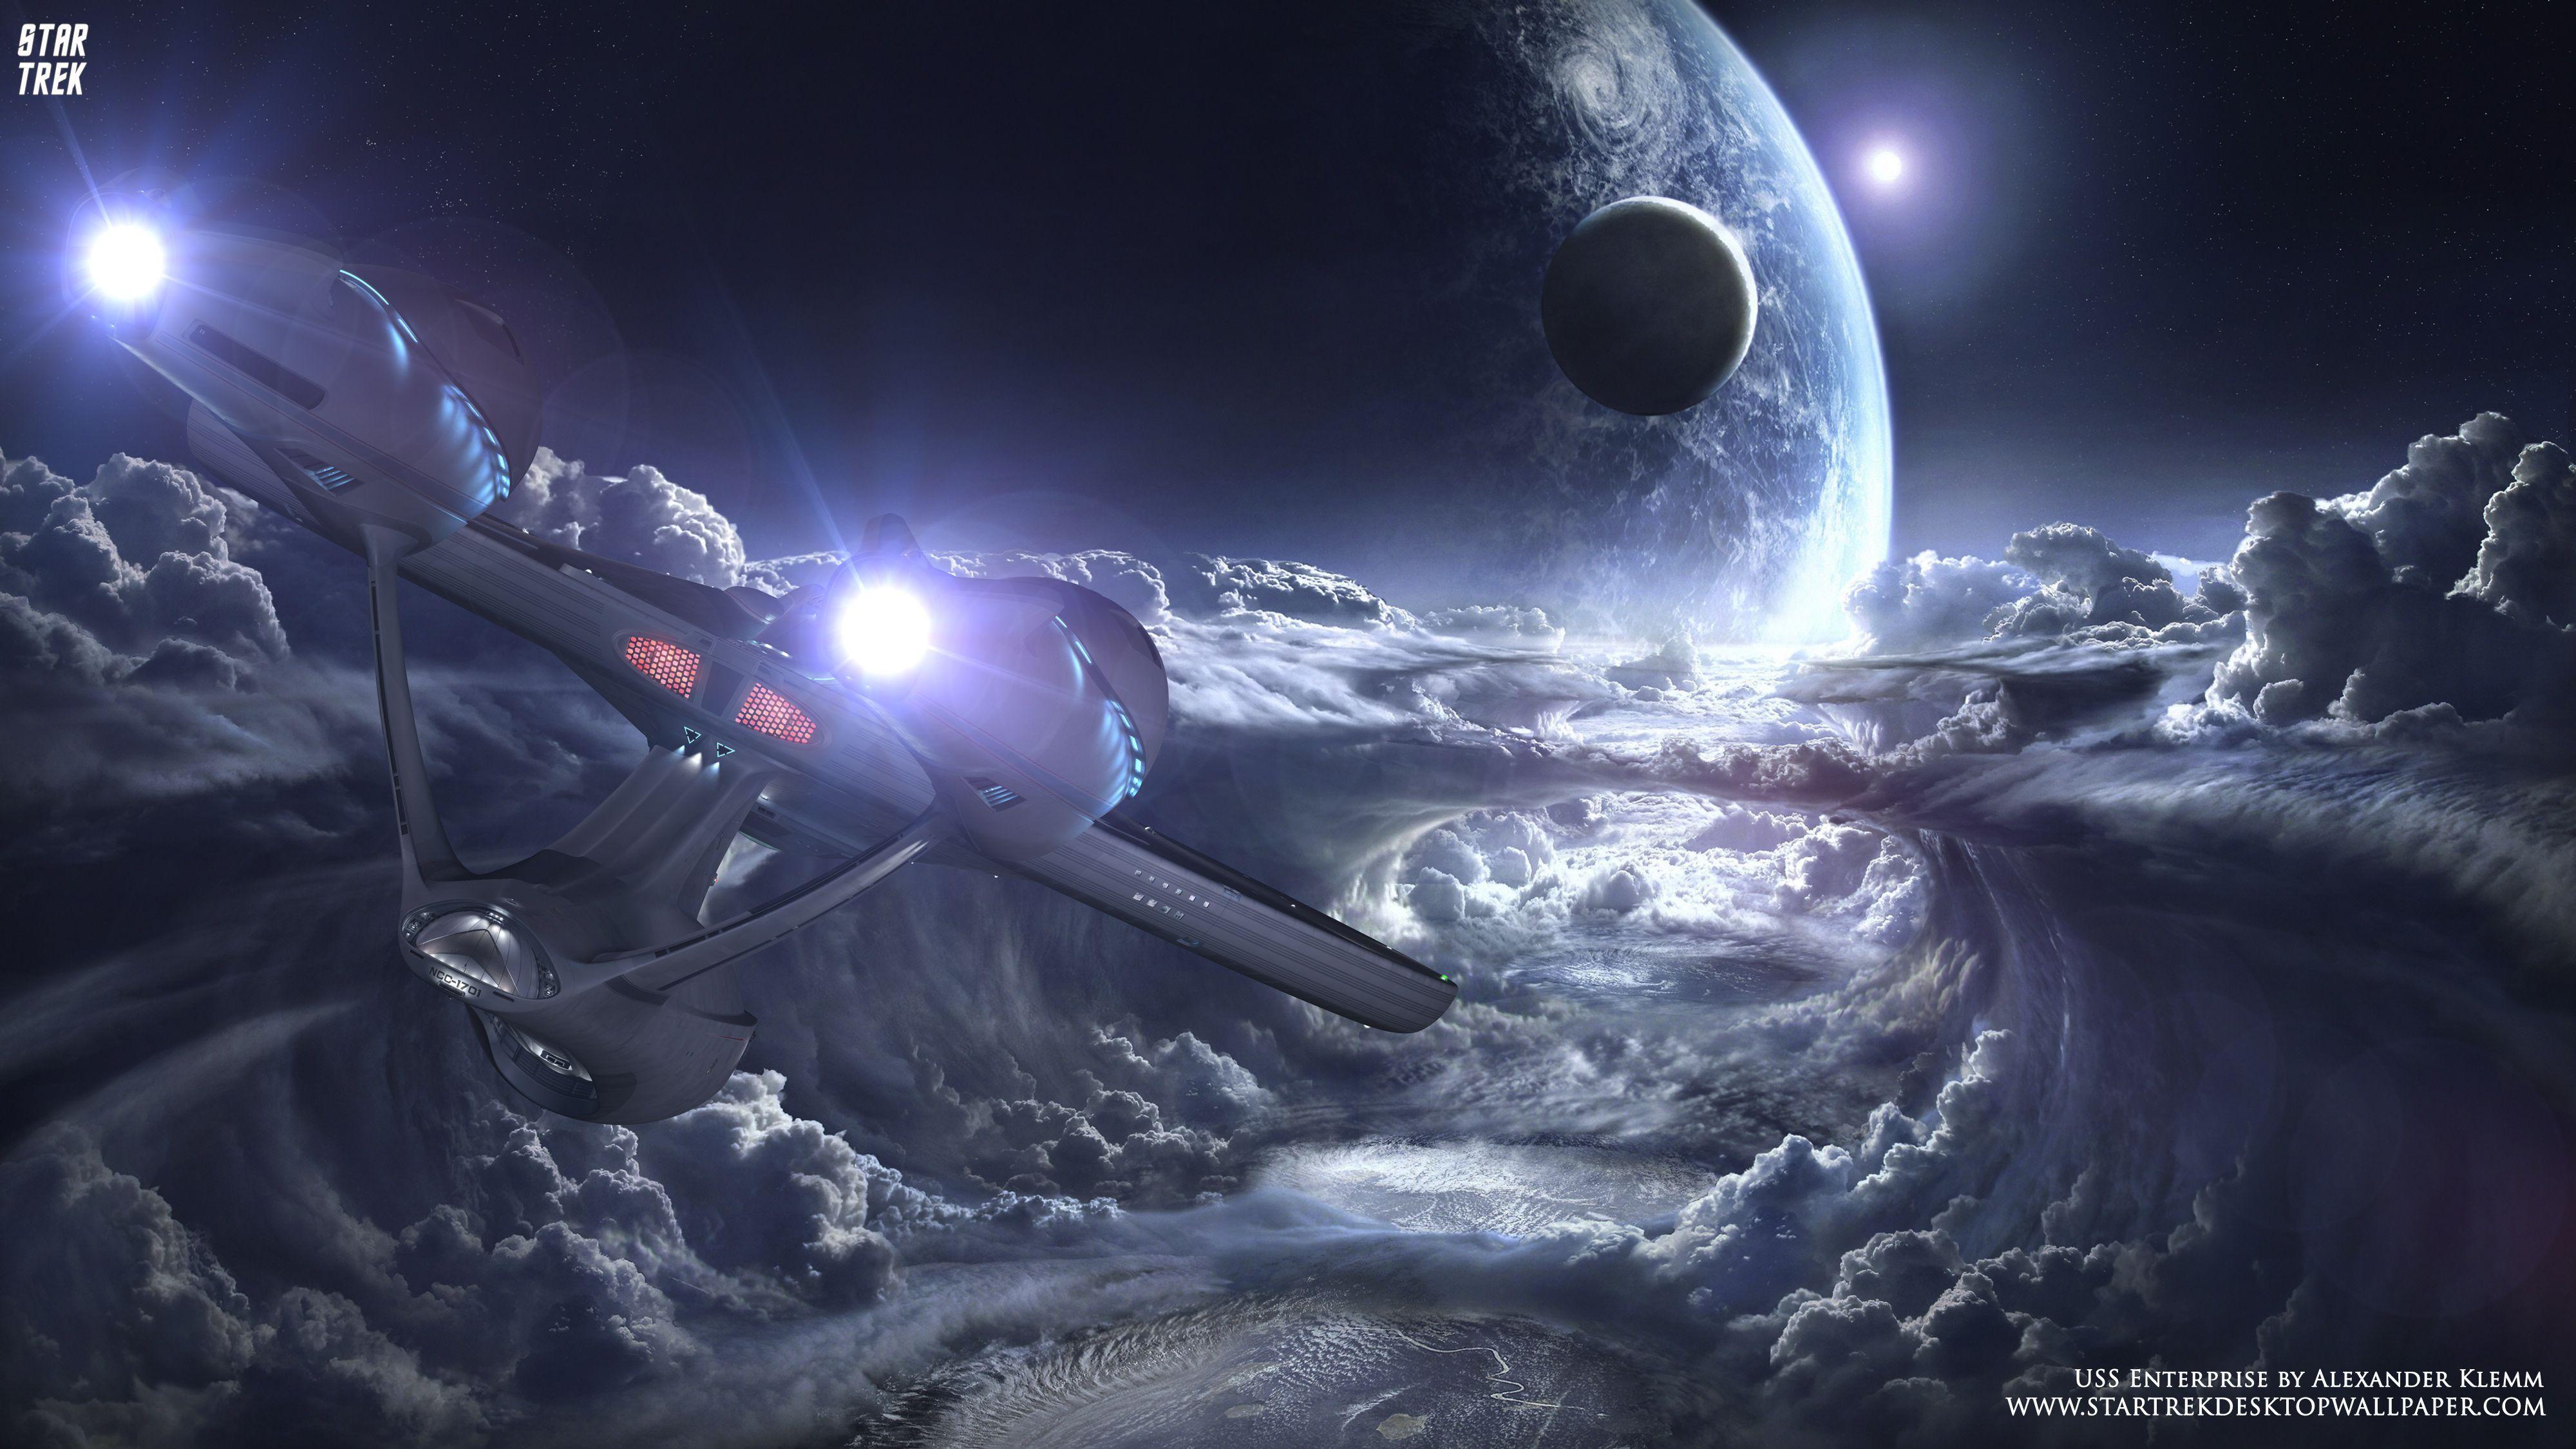 Star Trek USS Enterprise NCC 1701 Over New Planet Star Trek